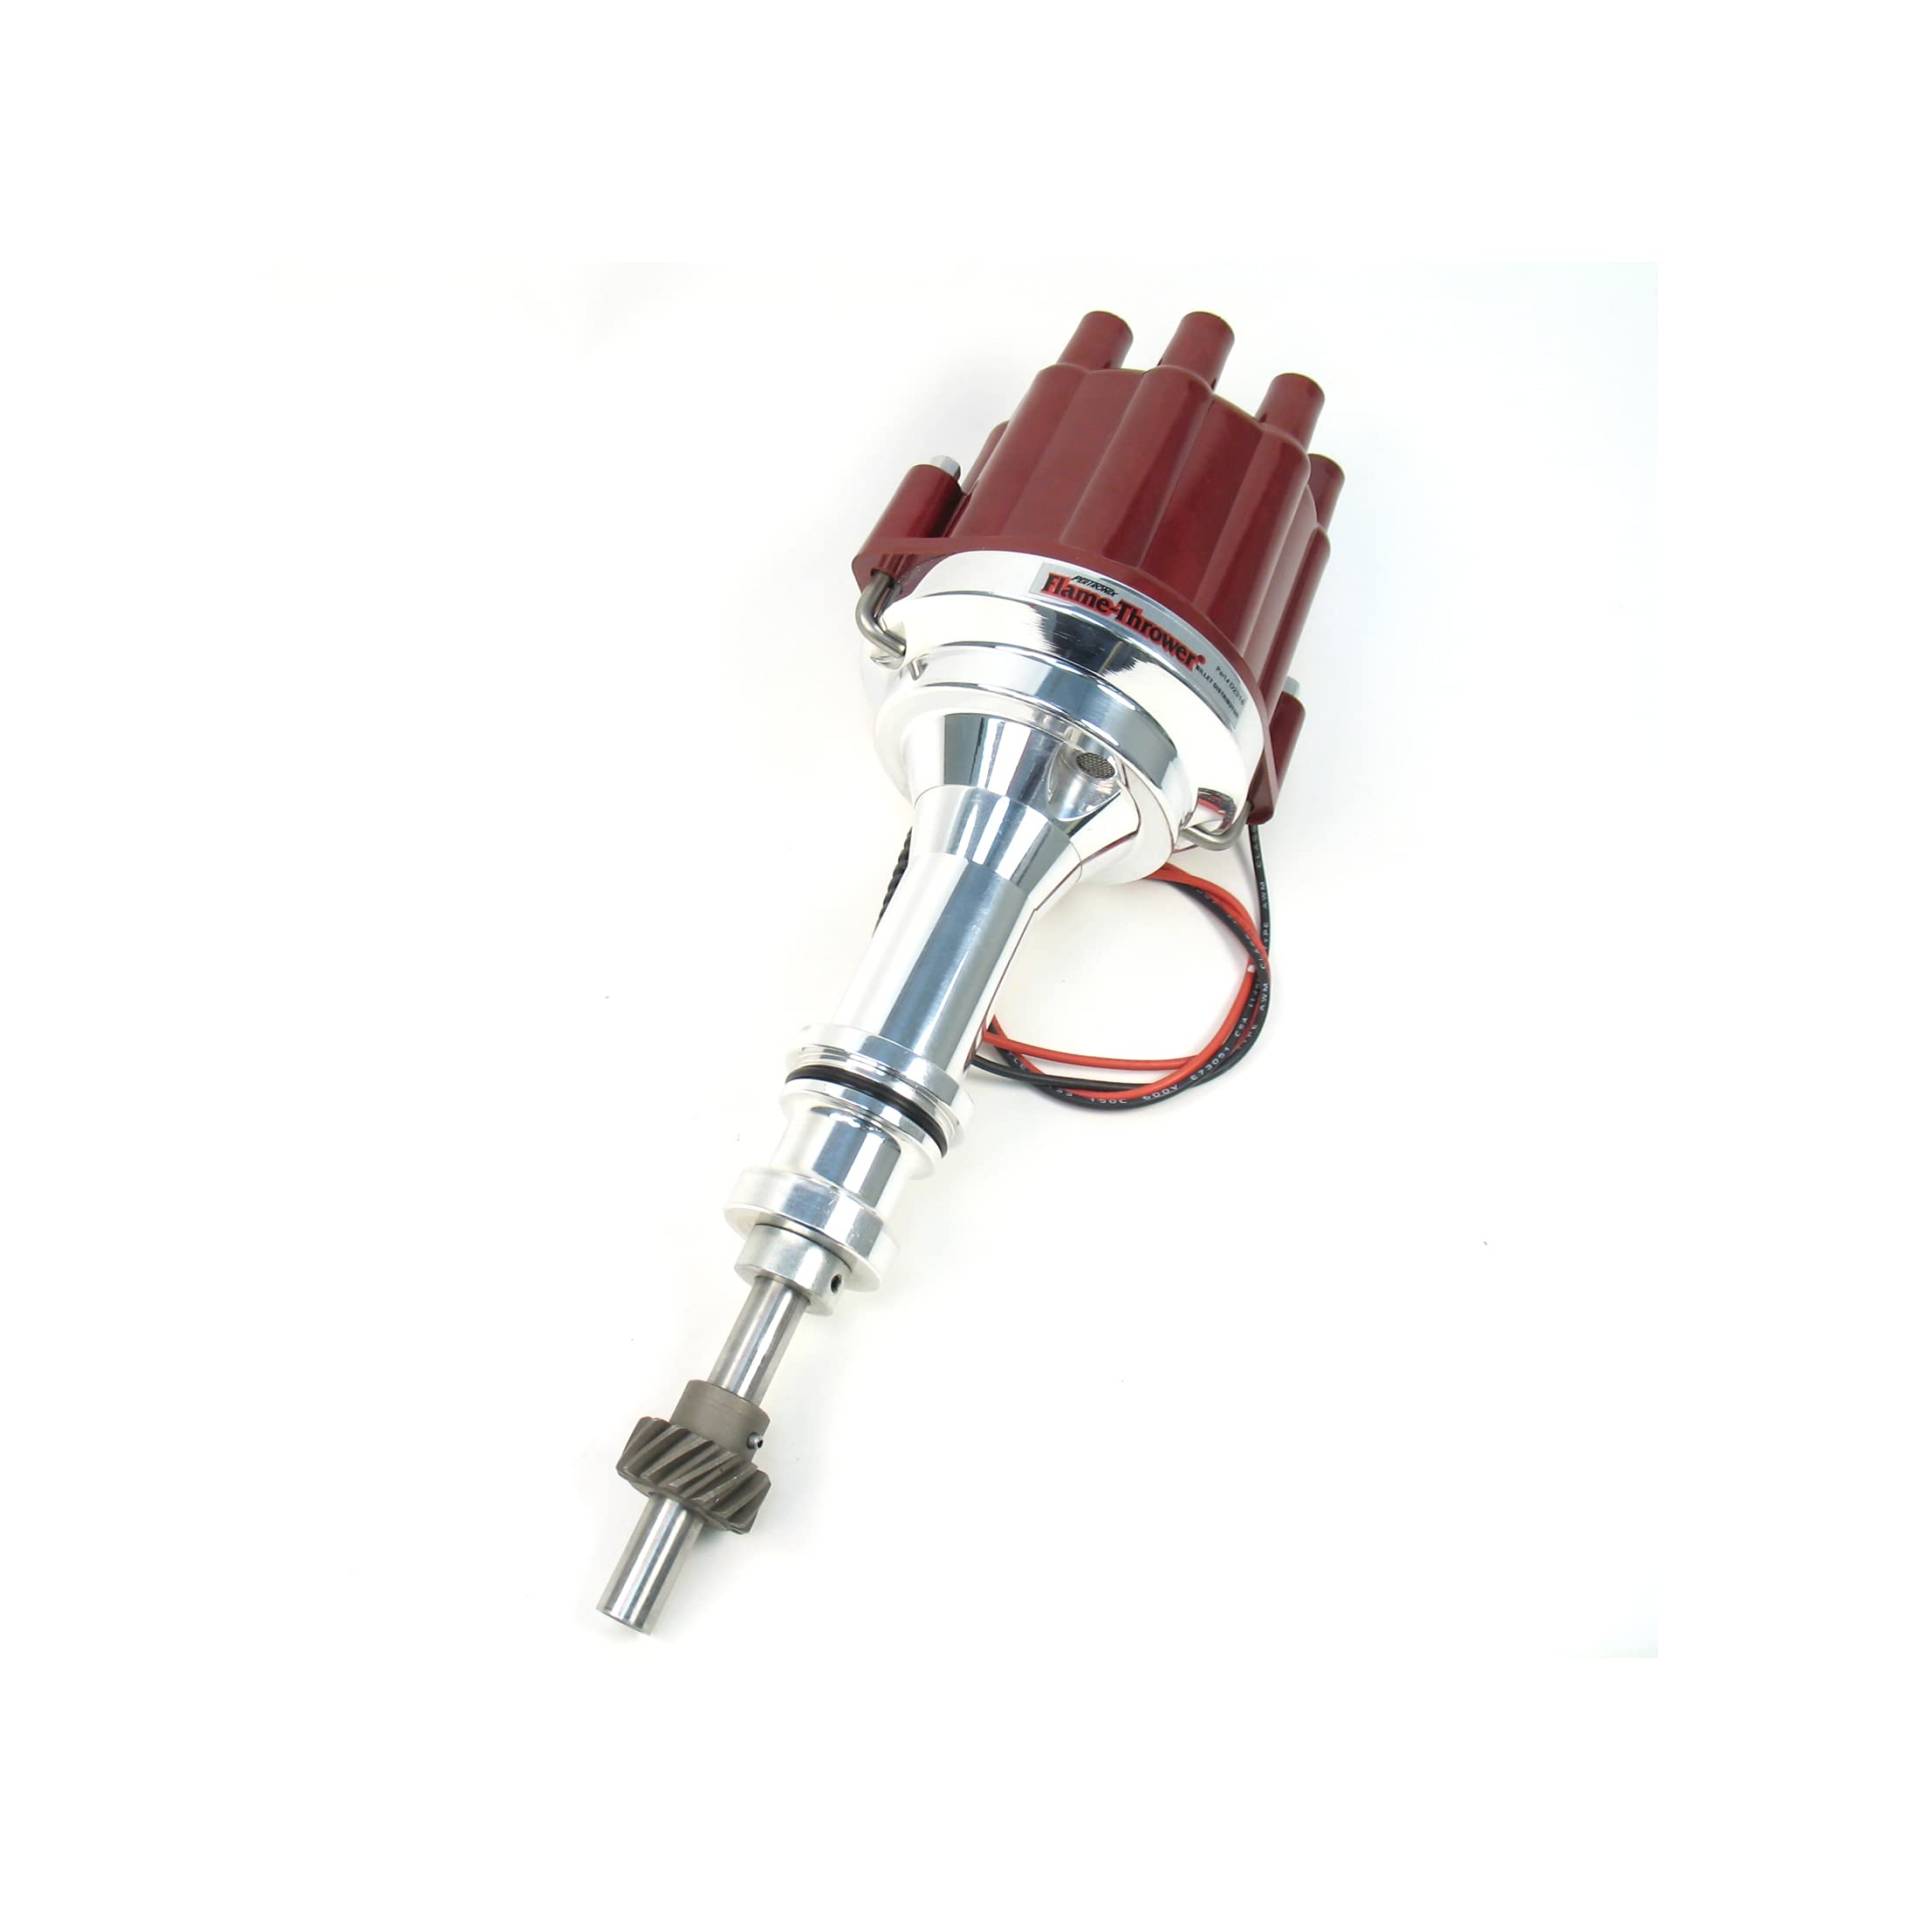 Pertronix D231801 Flammenwerfer Plug and Play Red Cap Marine Billet Elektronischer Verteiler mit Zündung II Technologie mit roter Kappe für Ford 351W von Pertronix